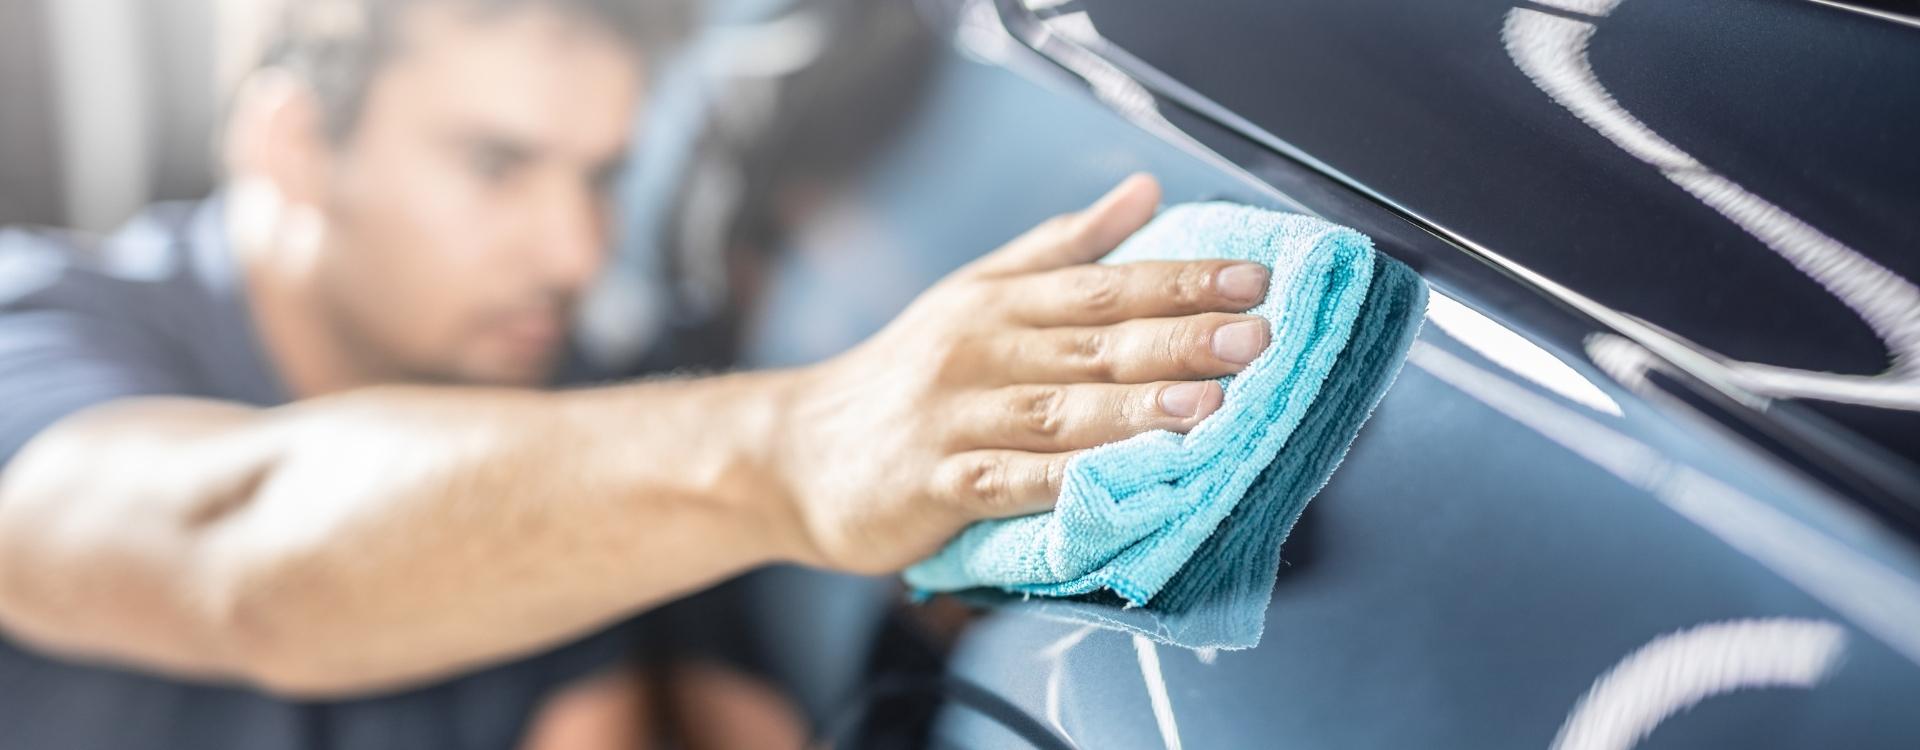 Mafra - Productos para la limpieza del coche